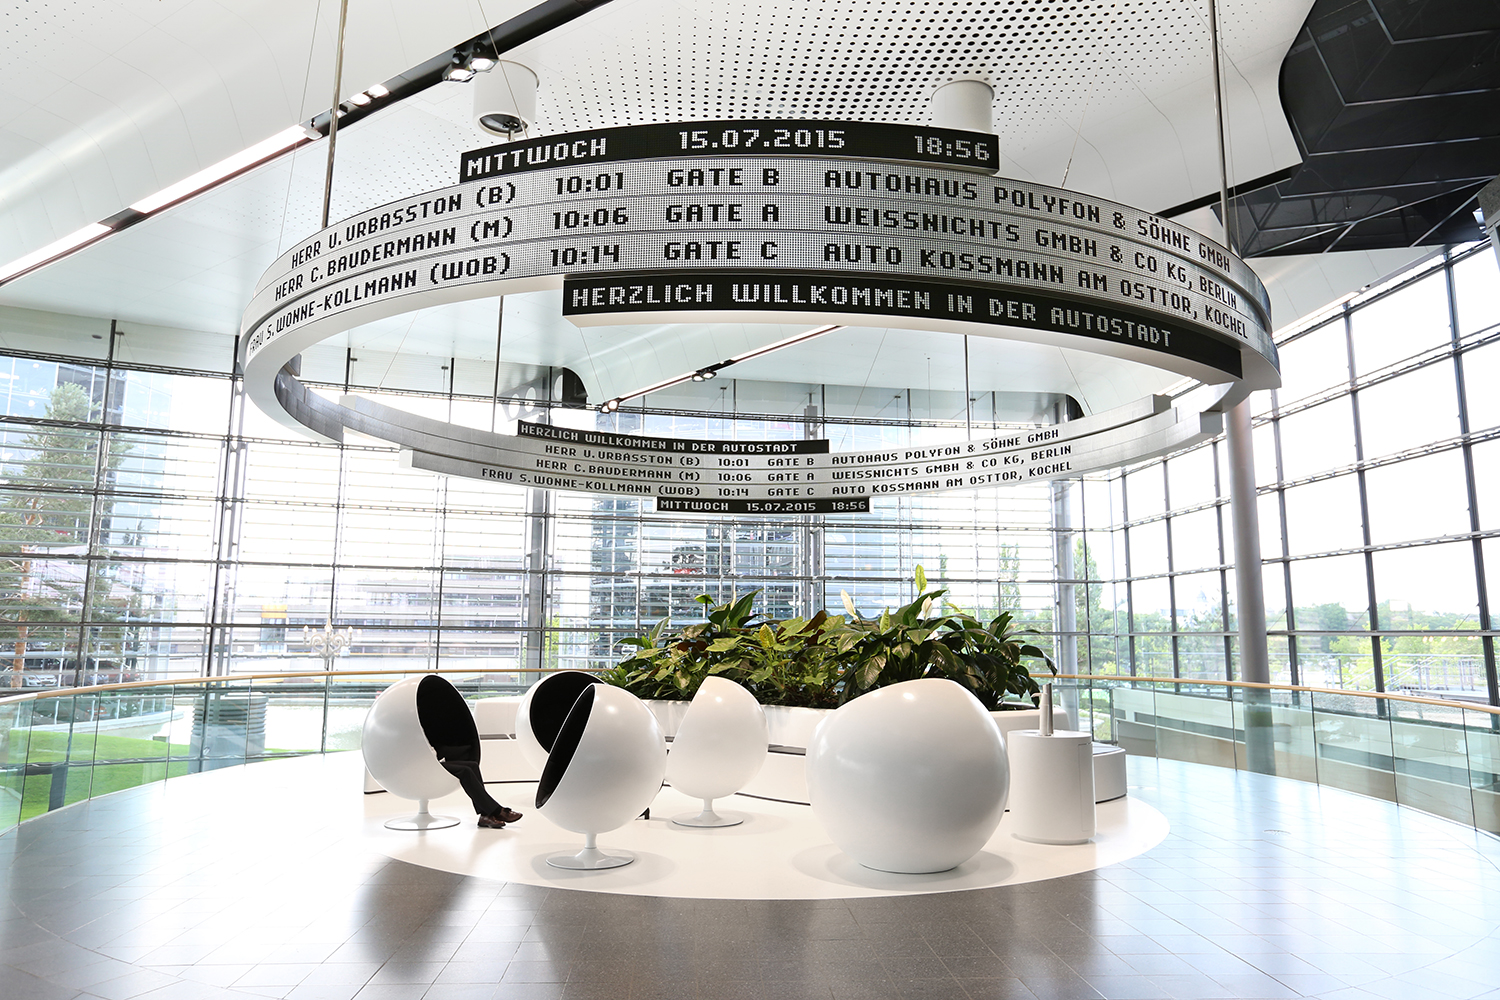 Spettacolare tabellone a 360° presso l’Autostadt di Wolfsburg